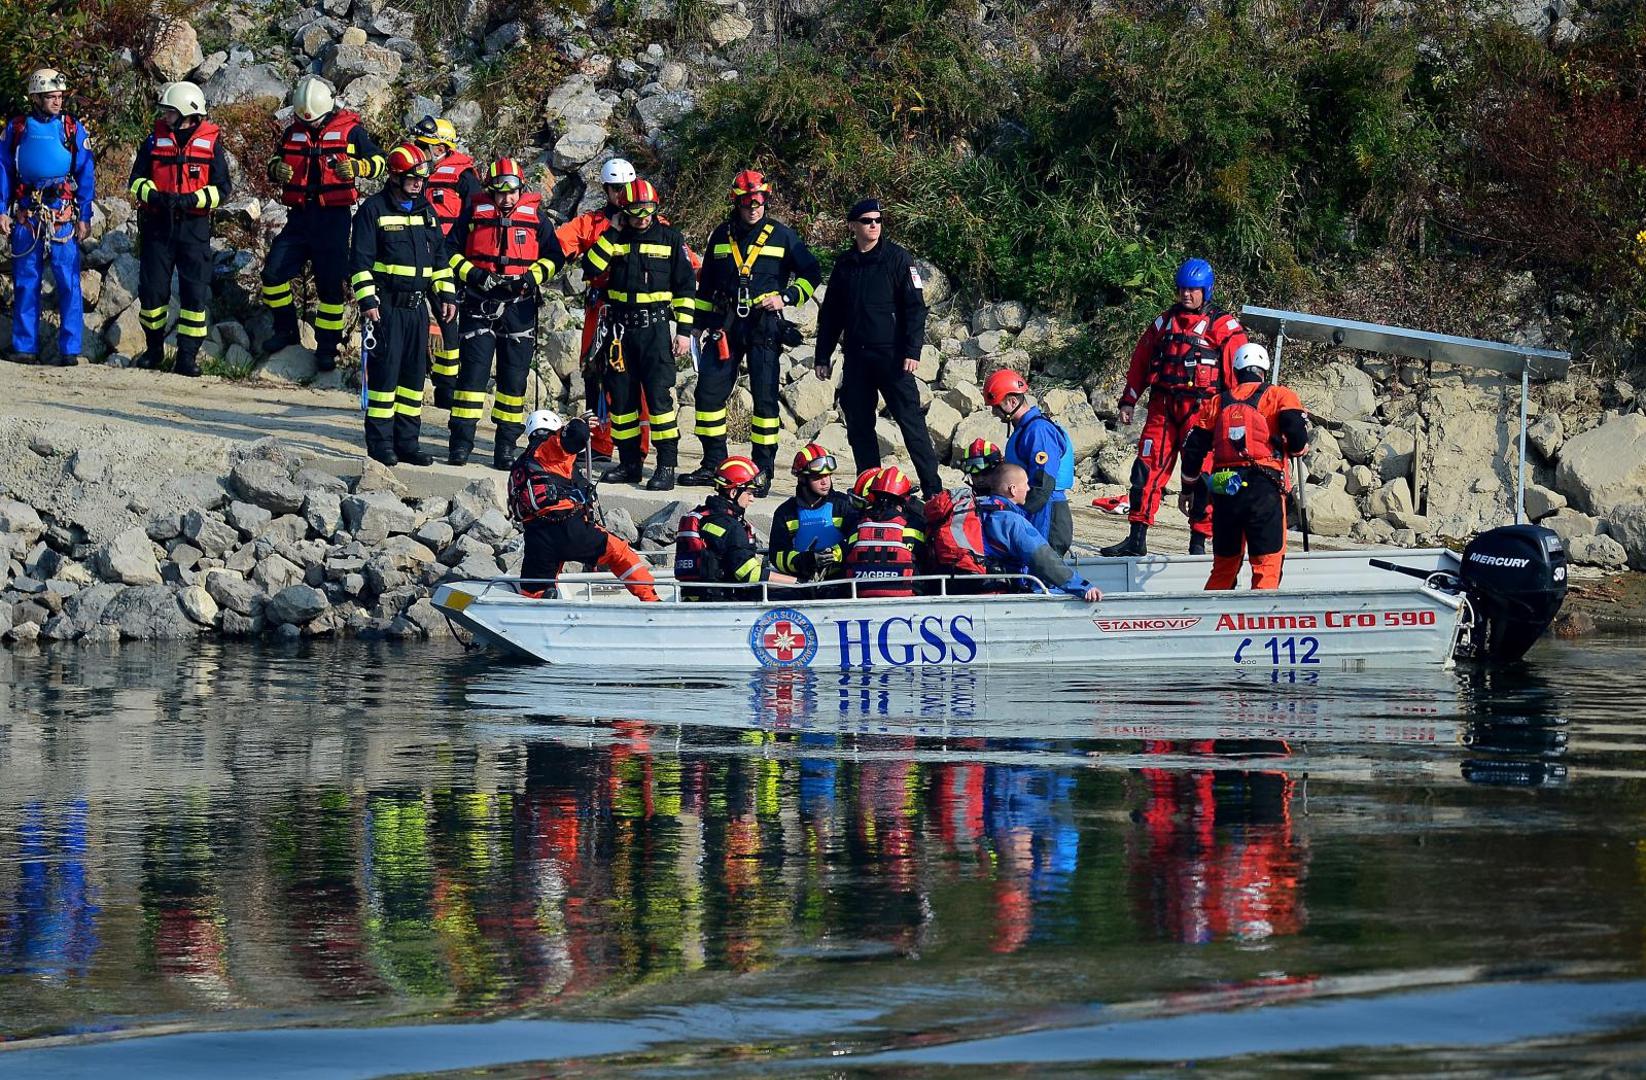 Prikazano je spašavanje i prebacivanje tima zaštite preko rijeke Save, pretraživanje ruševina bolnice Blate i spašavanje unesrećenih različitim tehnikama.